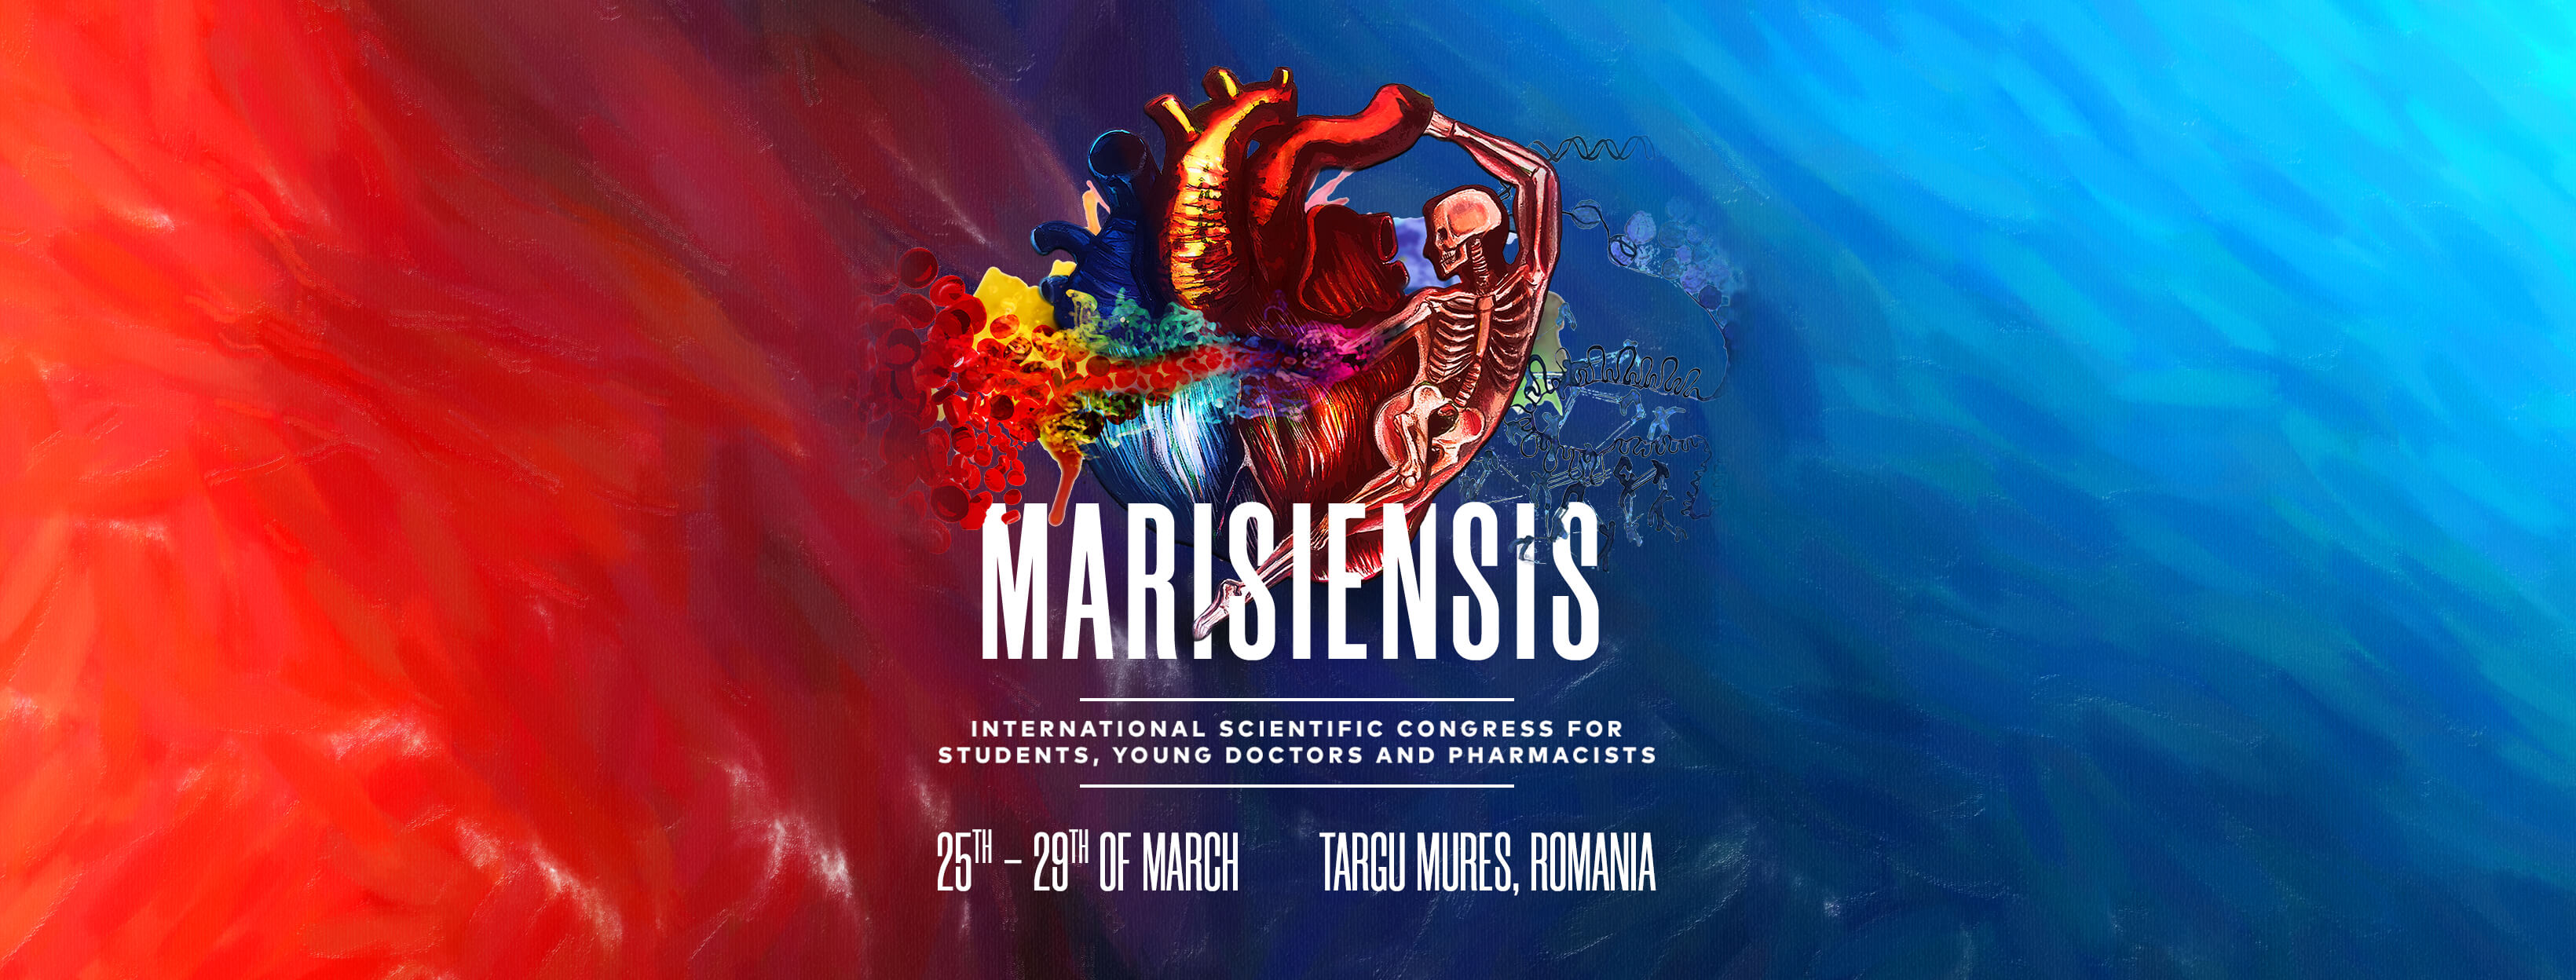 Congresul International pentru Studenţi, Tineri Doctori şi Farmacişti „Marisiensis” se amână